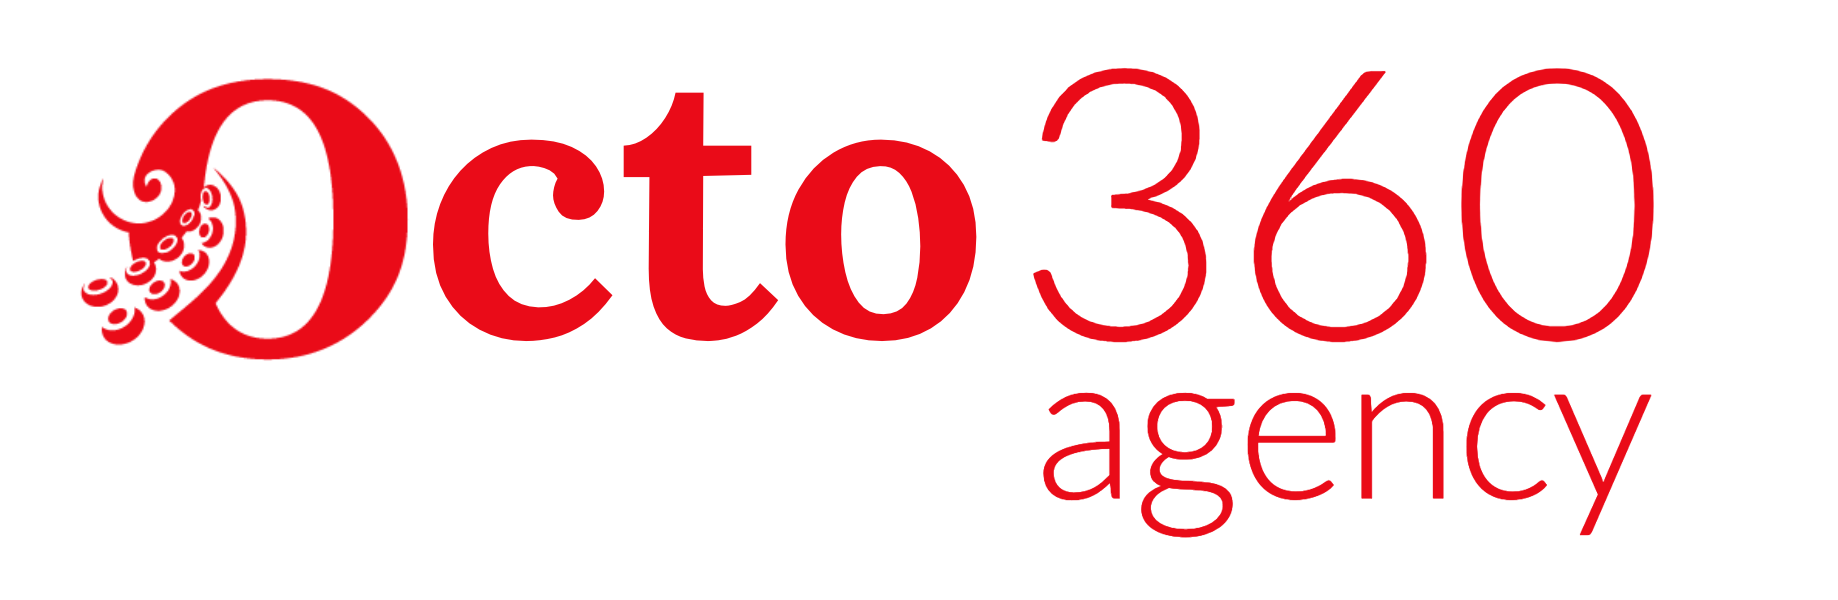 octo360 logo